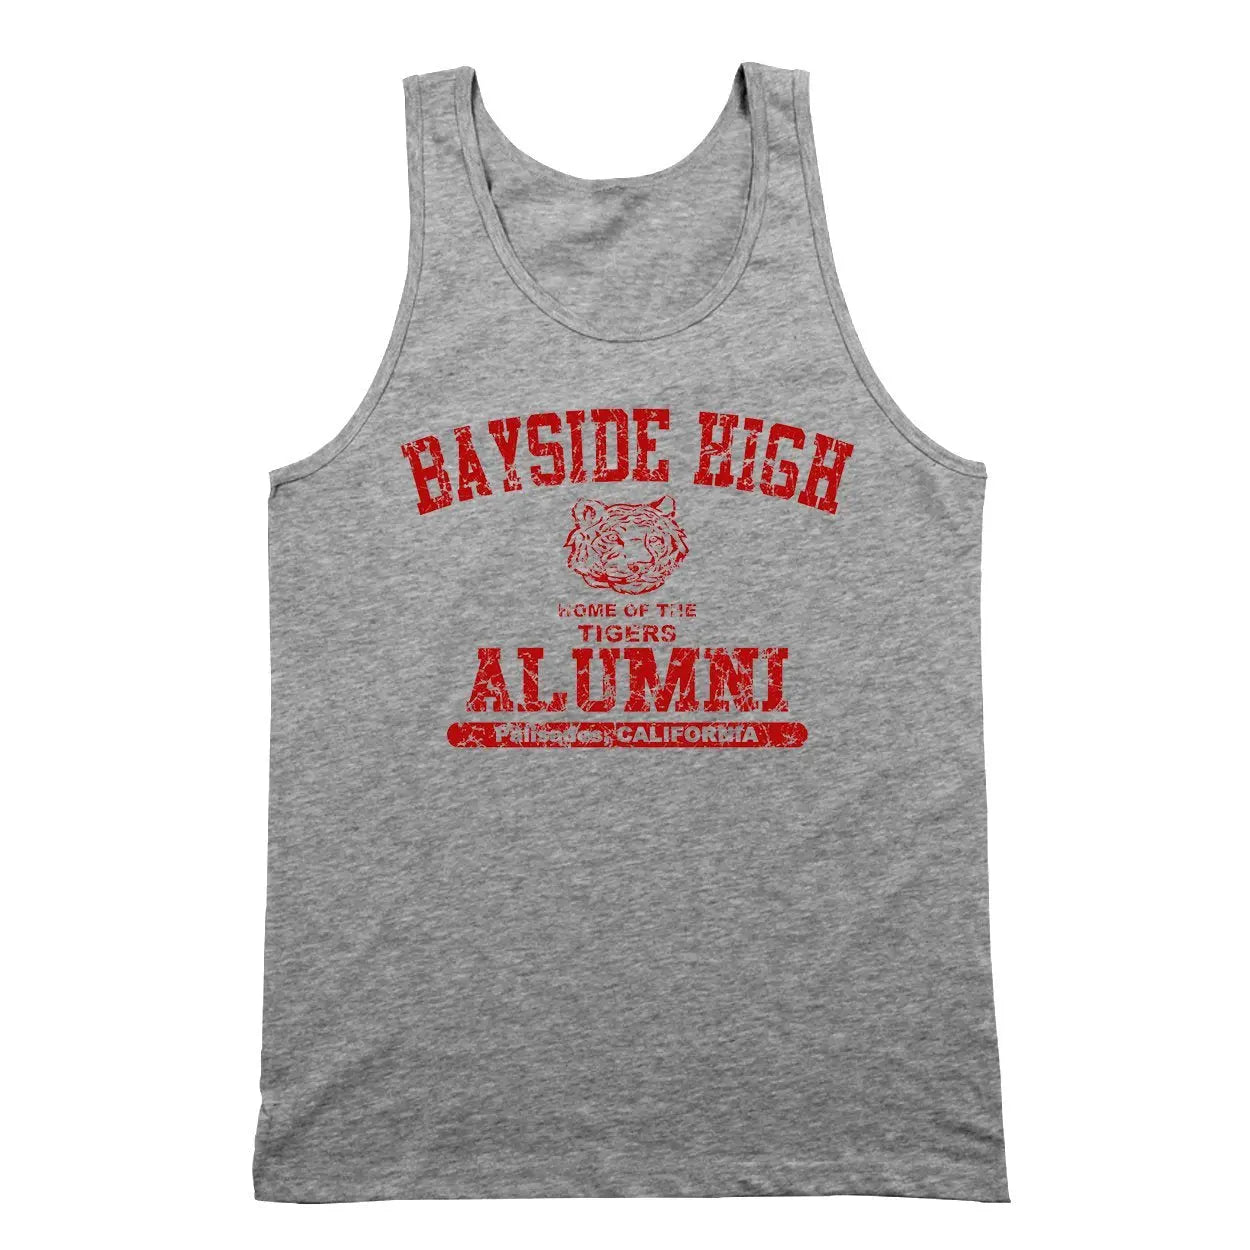 Bayside High Alumni Tshirt - Donkey Tees